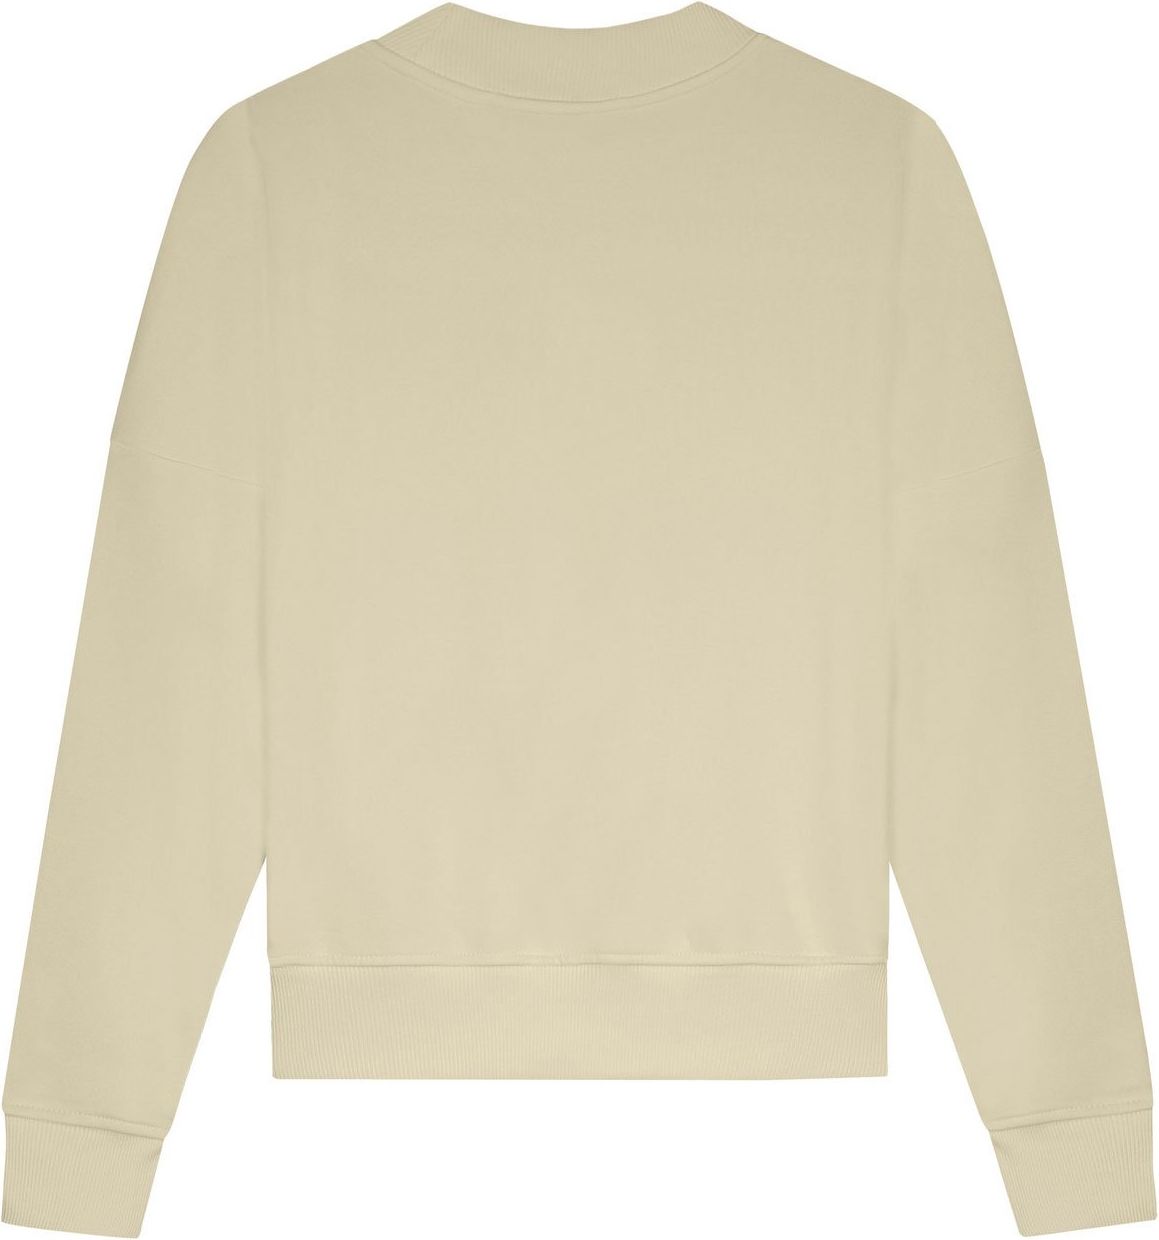 Malelions Brand Sweater - Beige Beige